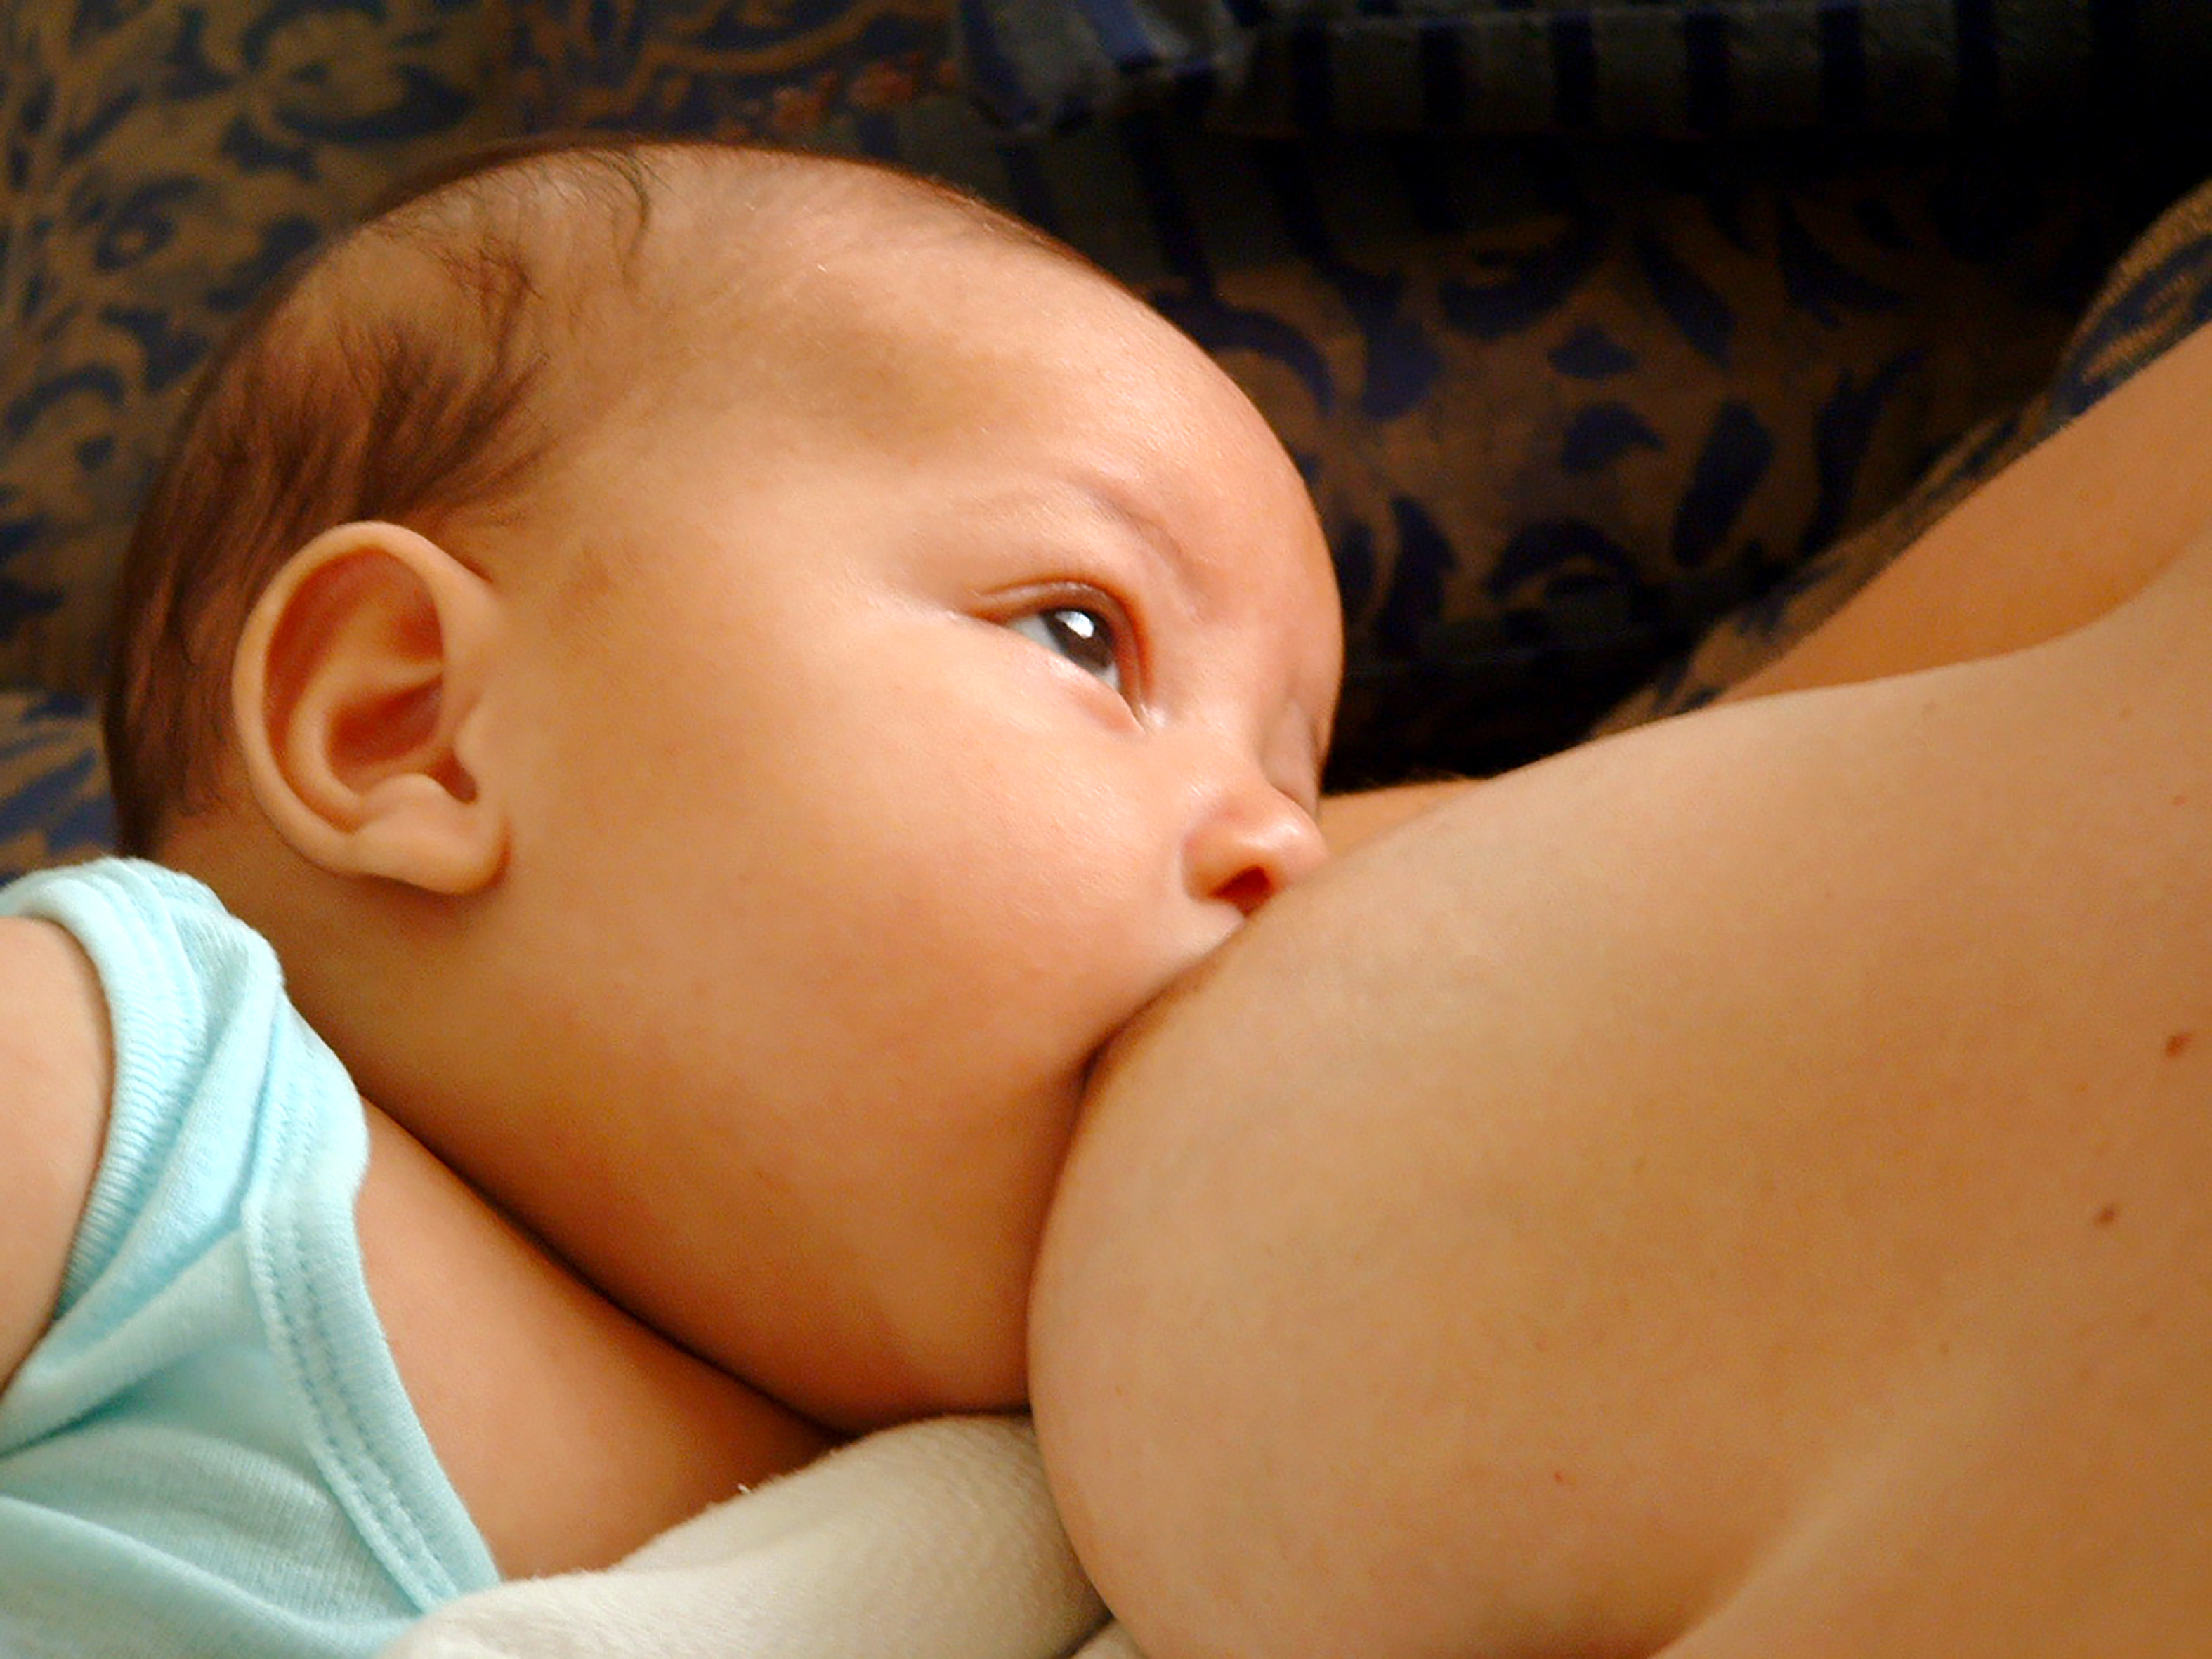 Saludsa - La importancia de la lactancia materna radica en